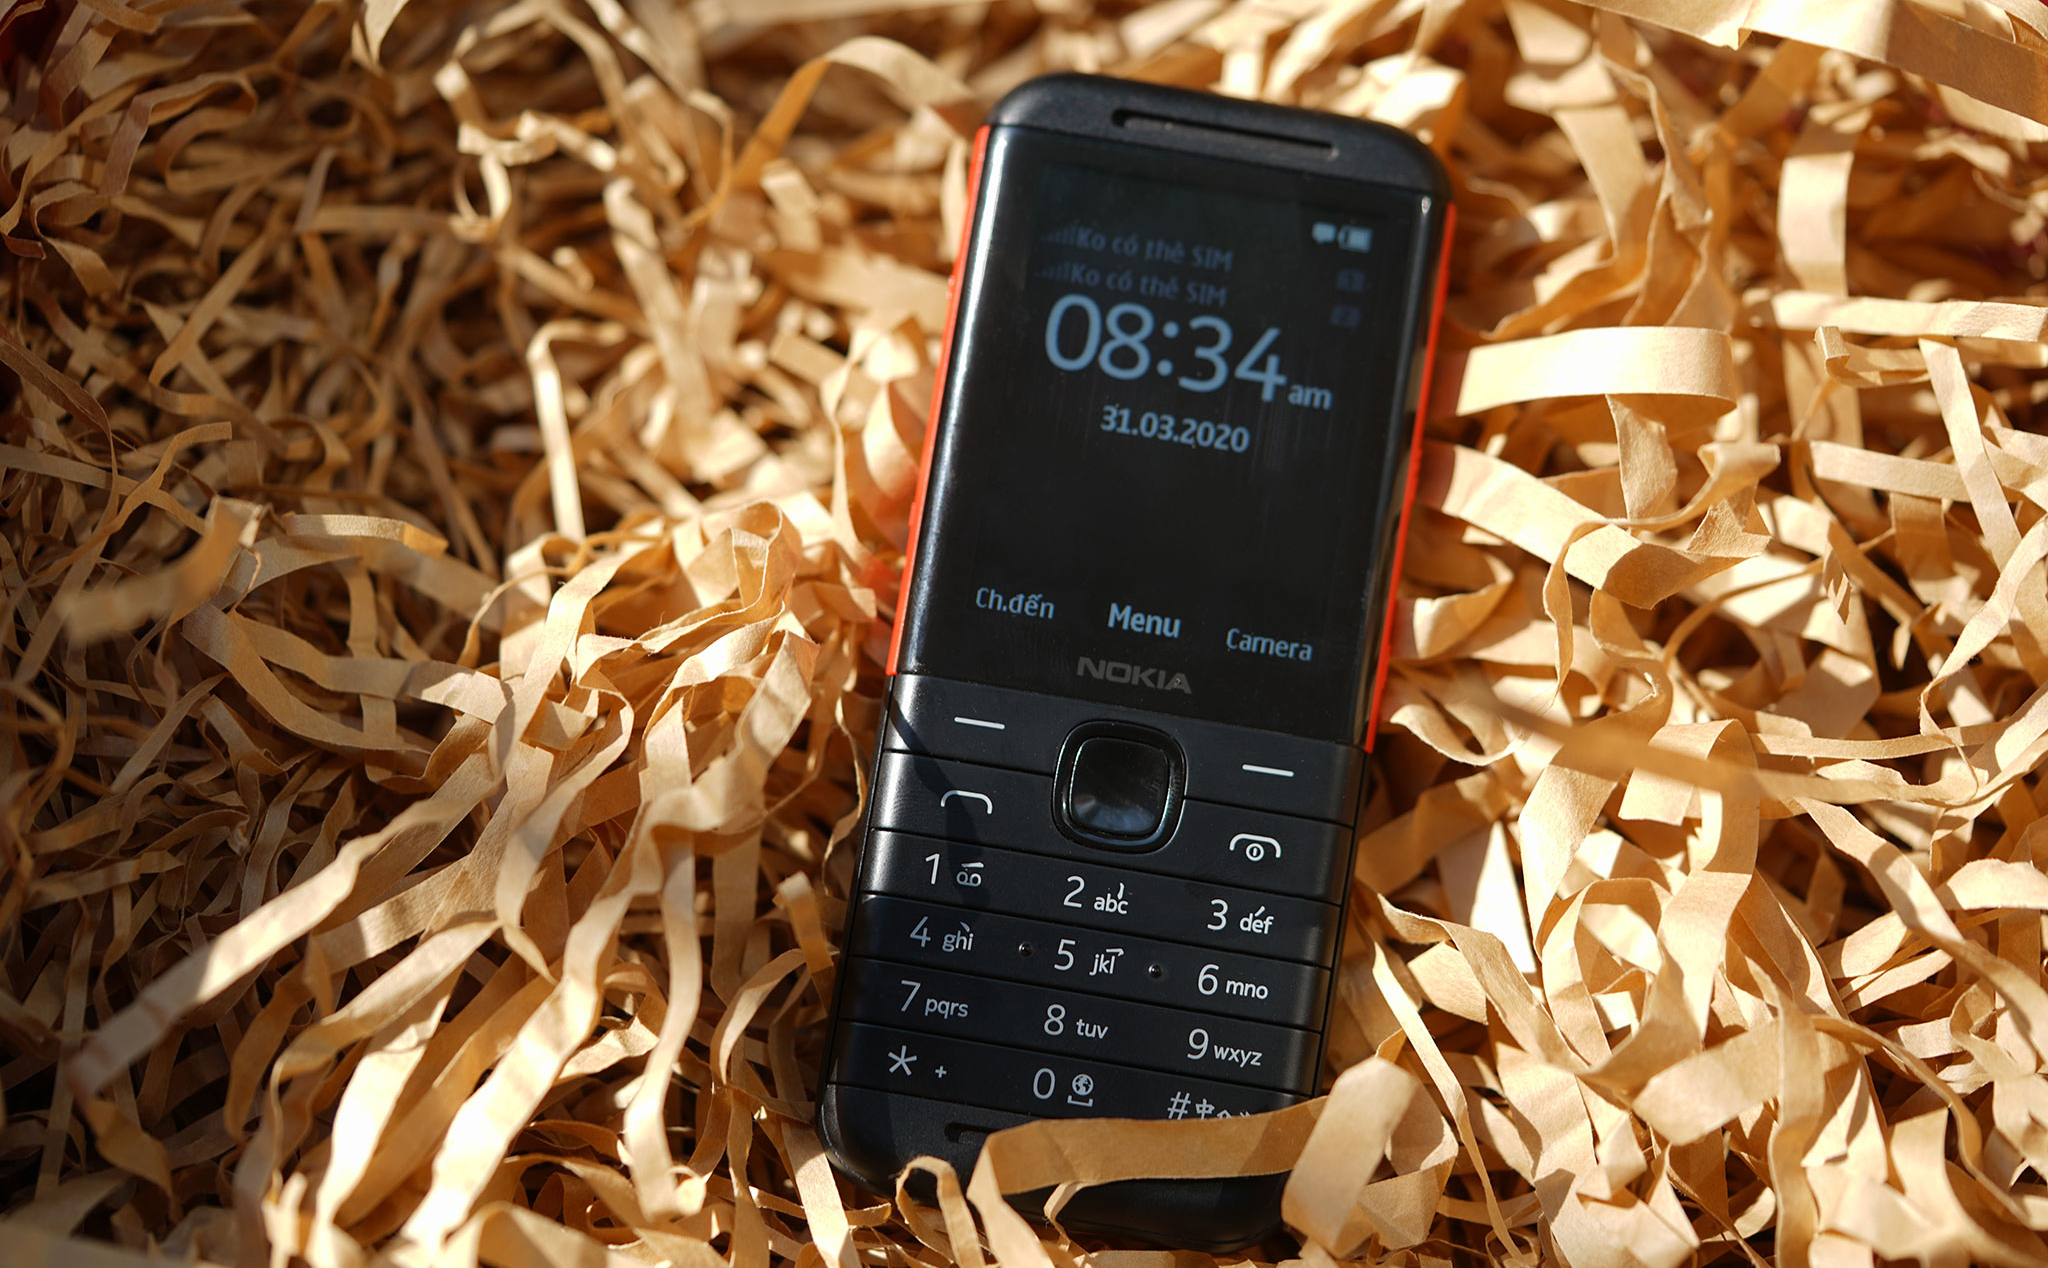 Nokia 5310 XpressMusic: chiếc điện thoại thú vị dành cho học sinh và người lớn tuổi yêu âm nhạc